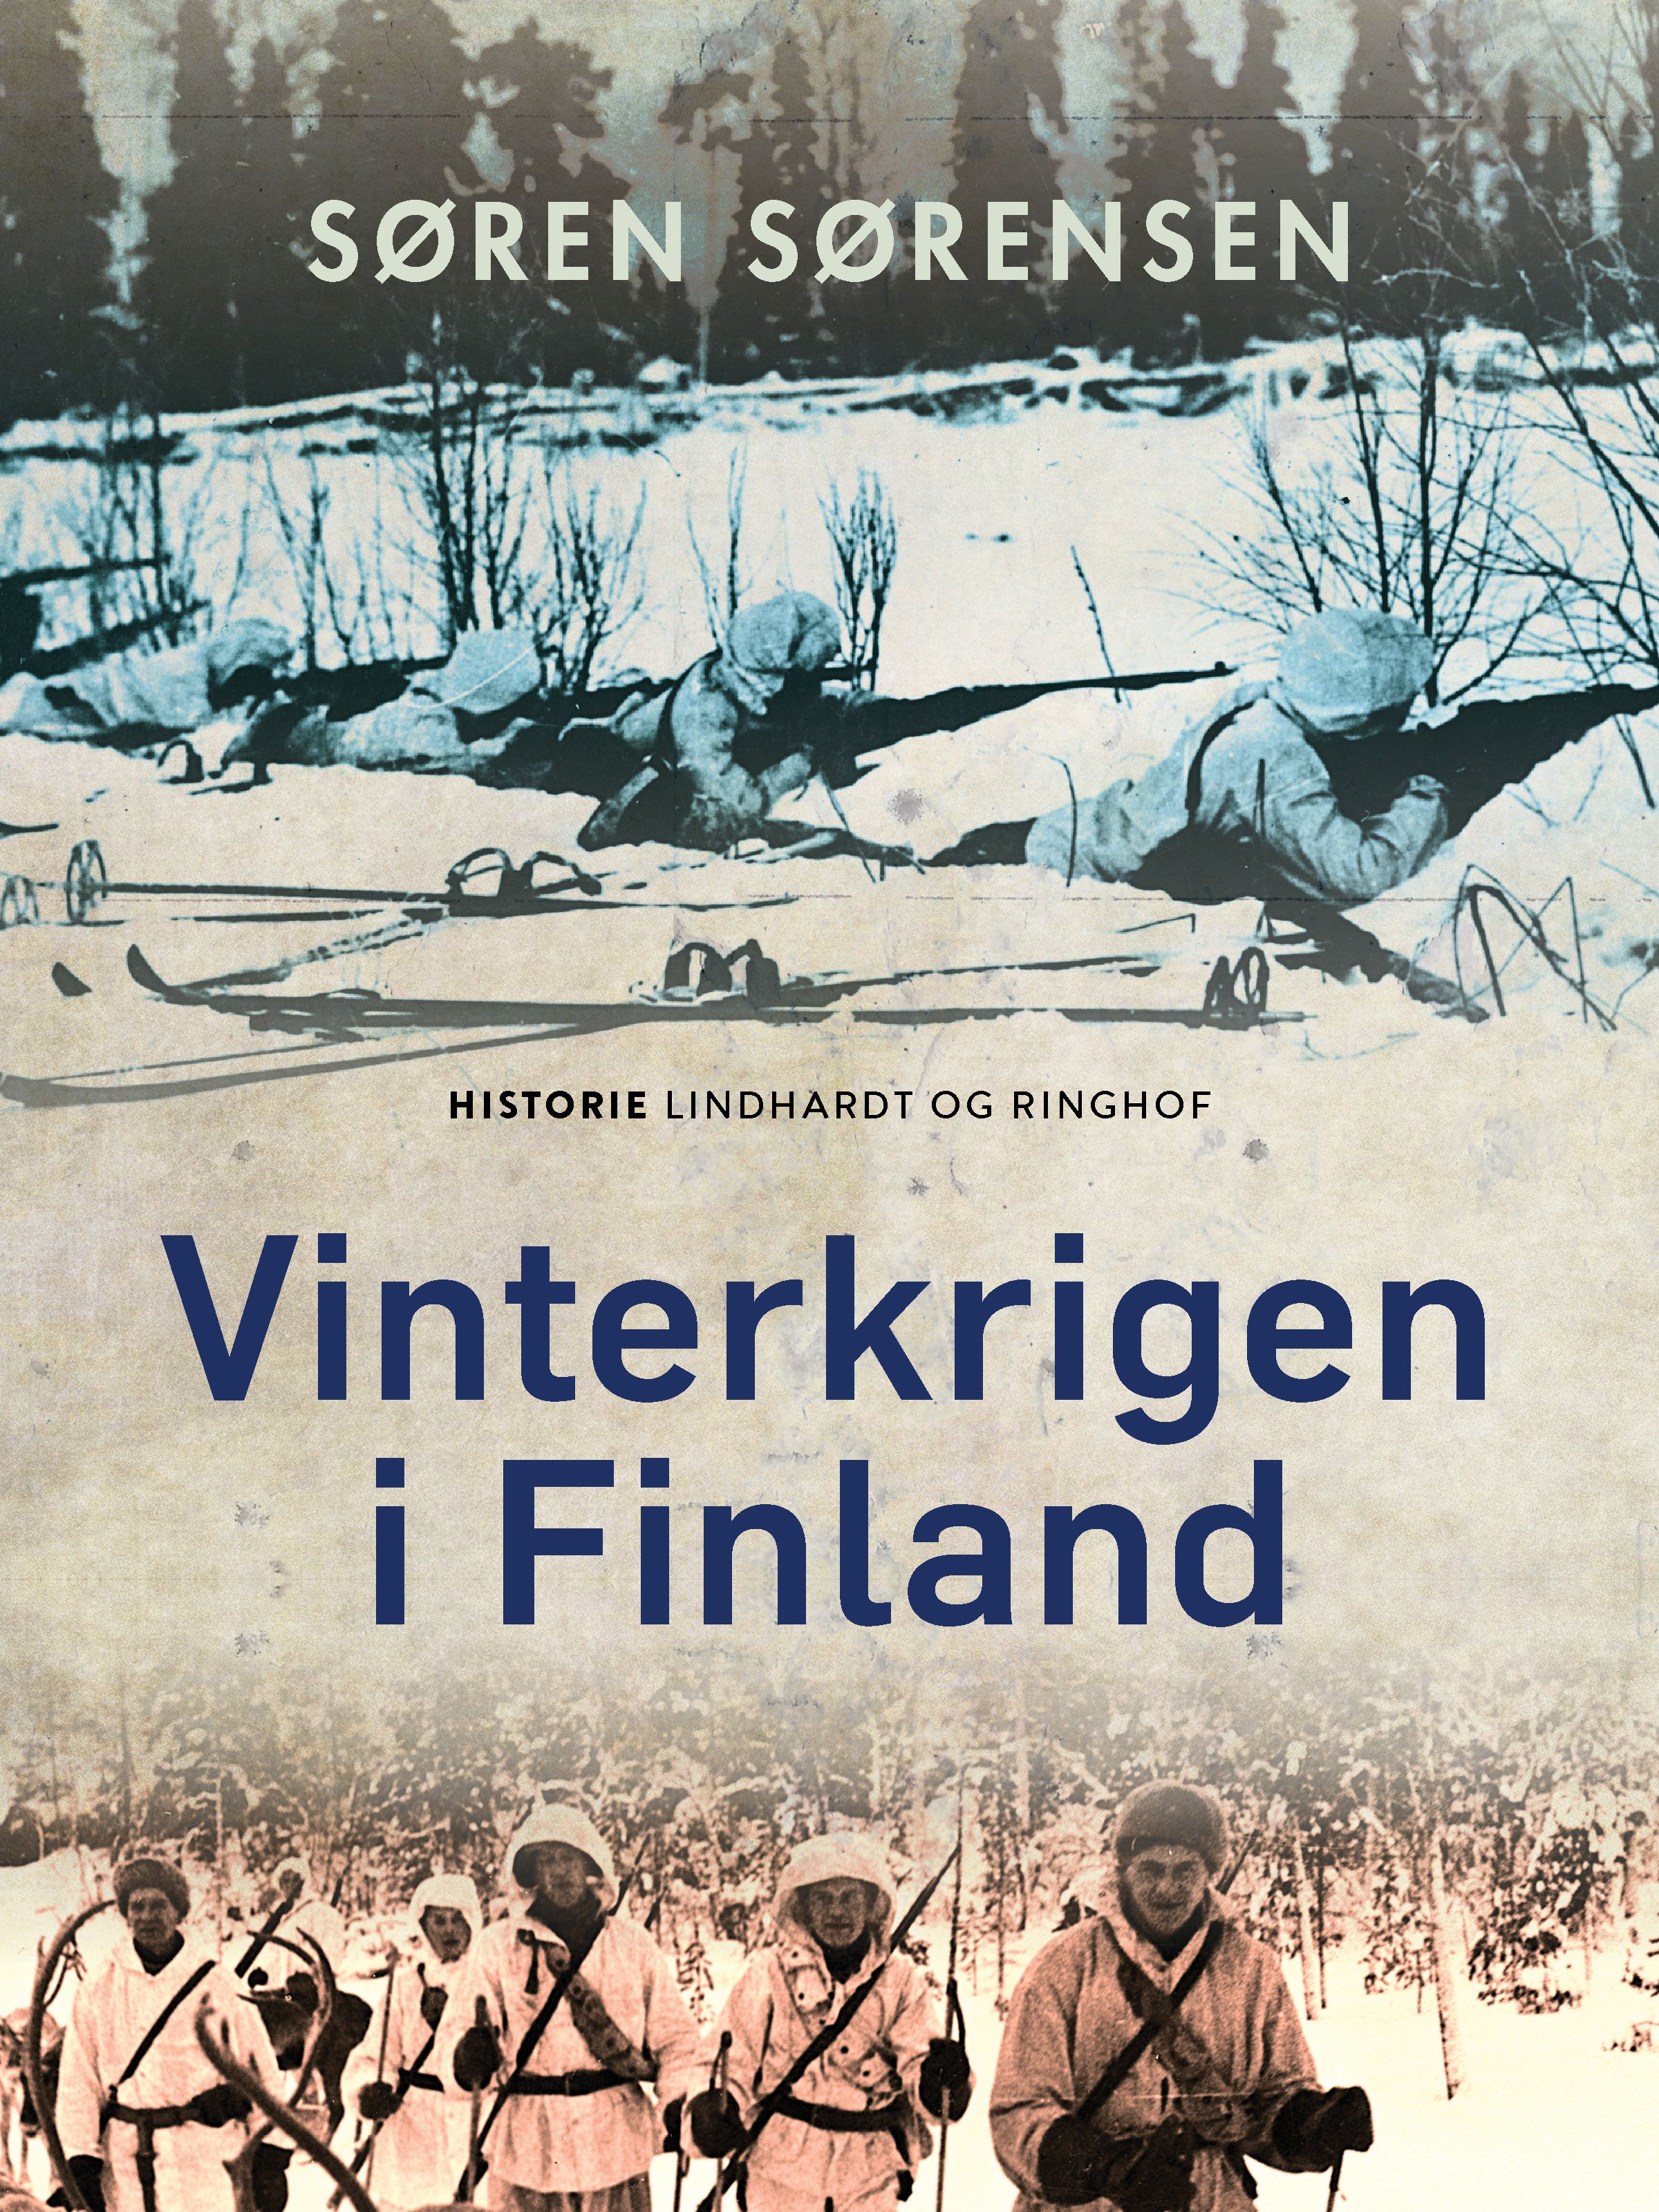 Vinterkrigen i Finland, e-bog af Søren Sørensen